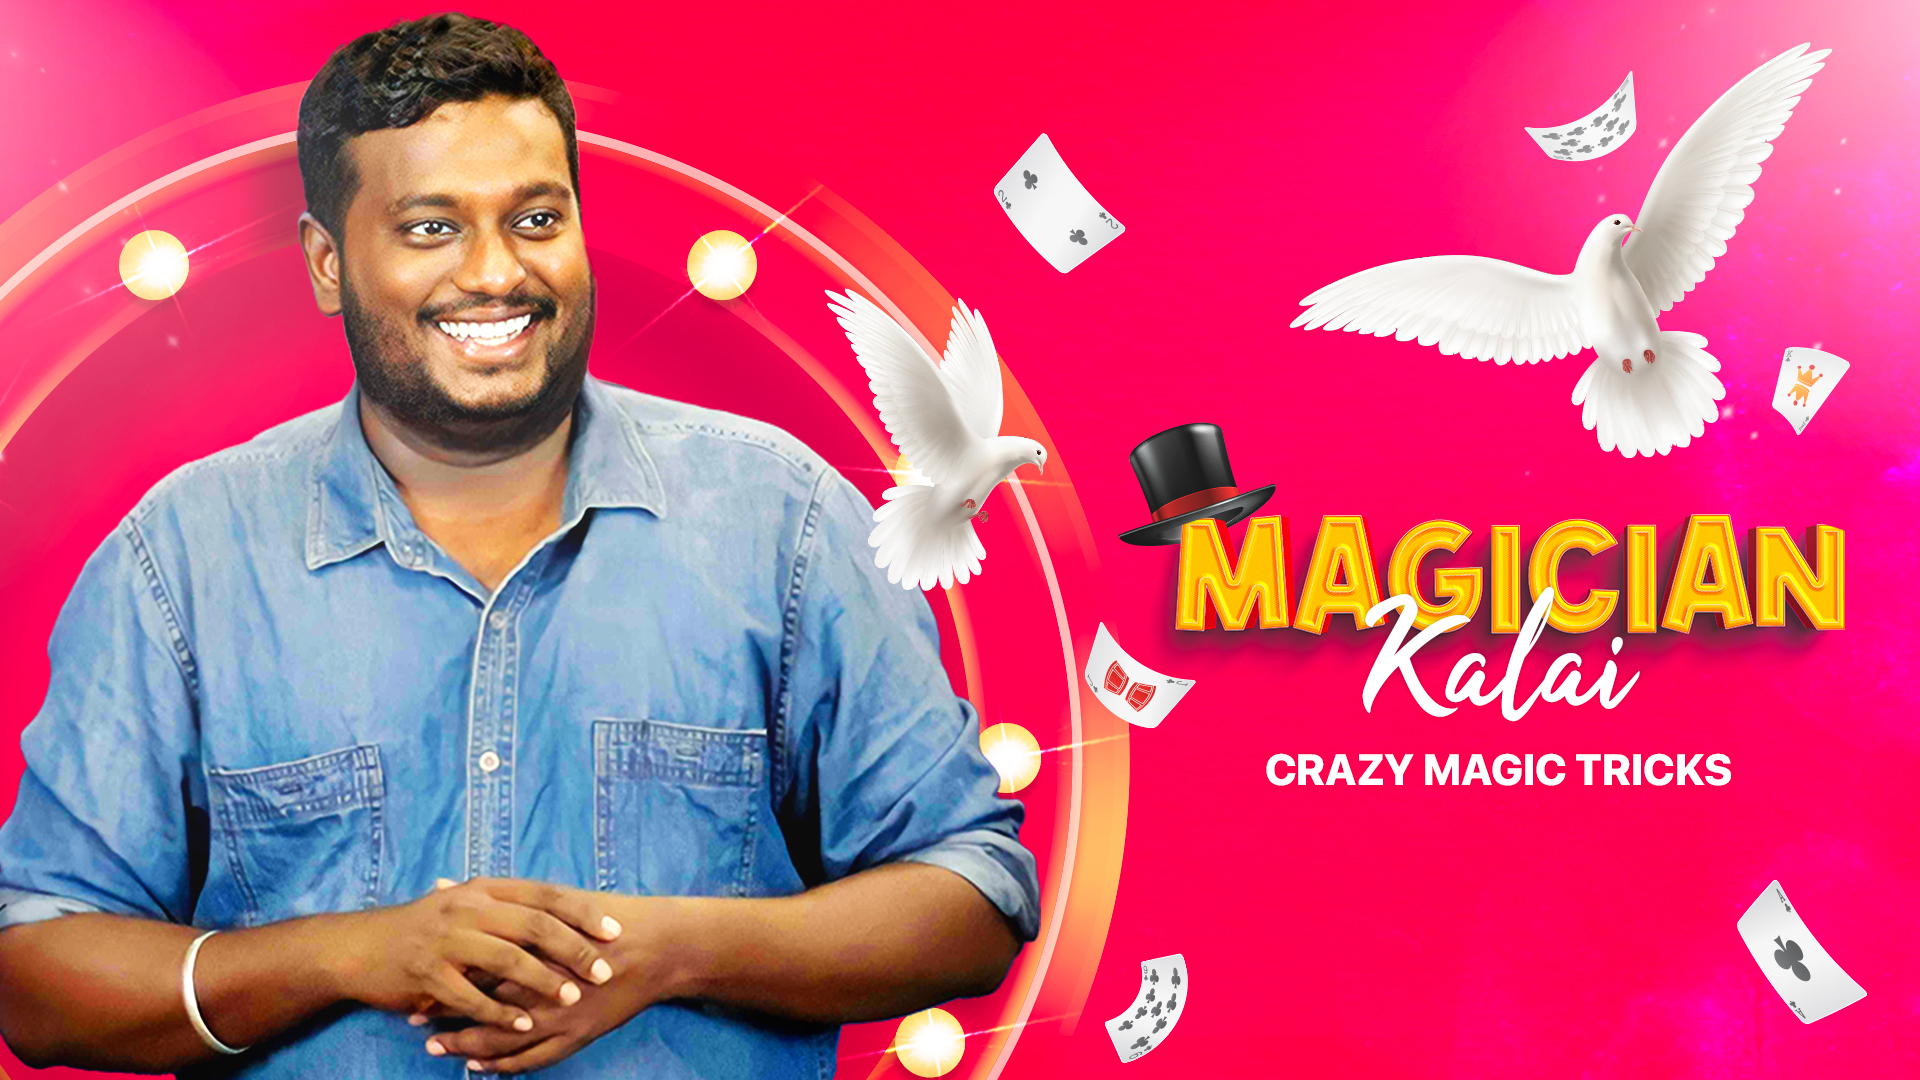 celebrity magician Kalai performs incredible rope magic tricks video